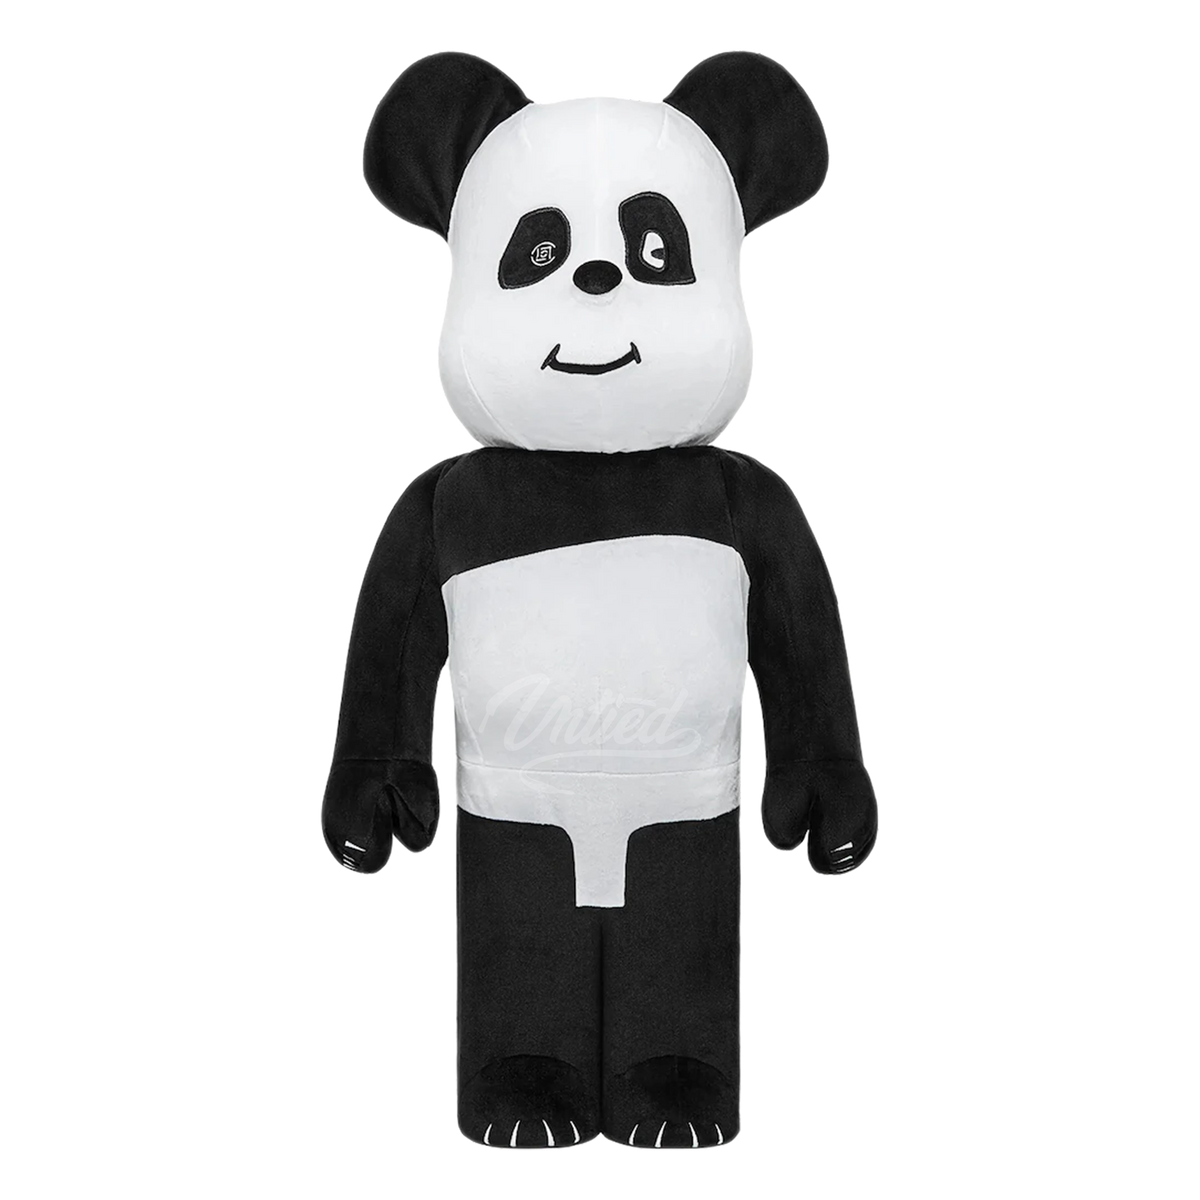 Bearbrick x Clot "Panda" 1000%